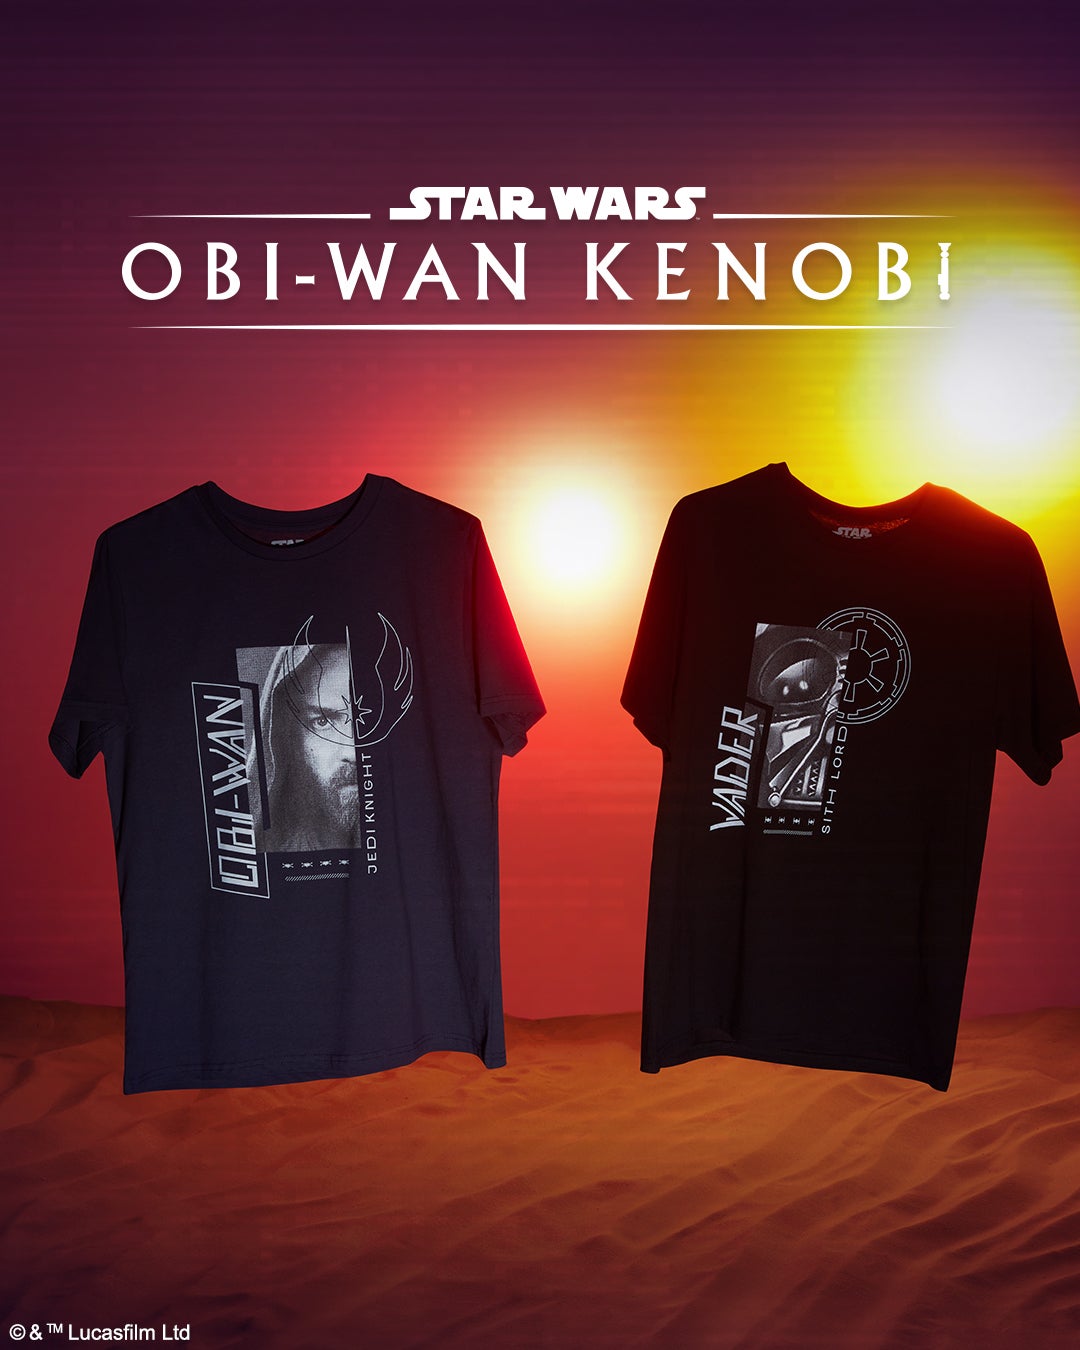 Obi-wan Kenobi Collection On VeryNeko